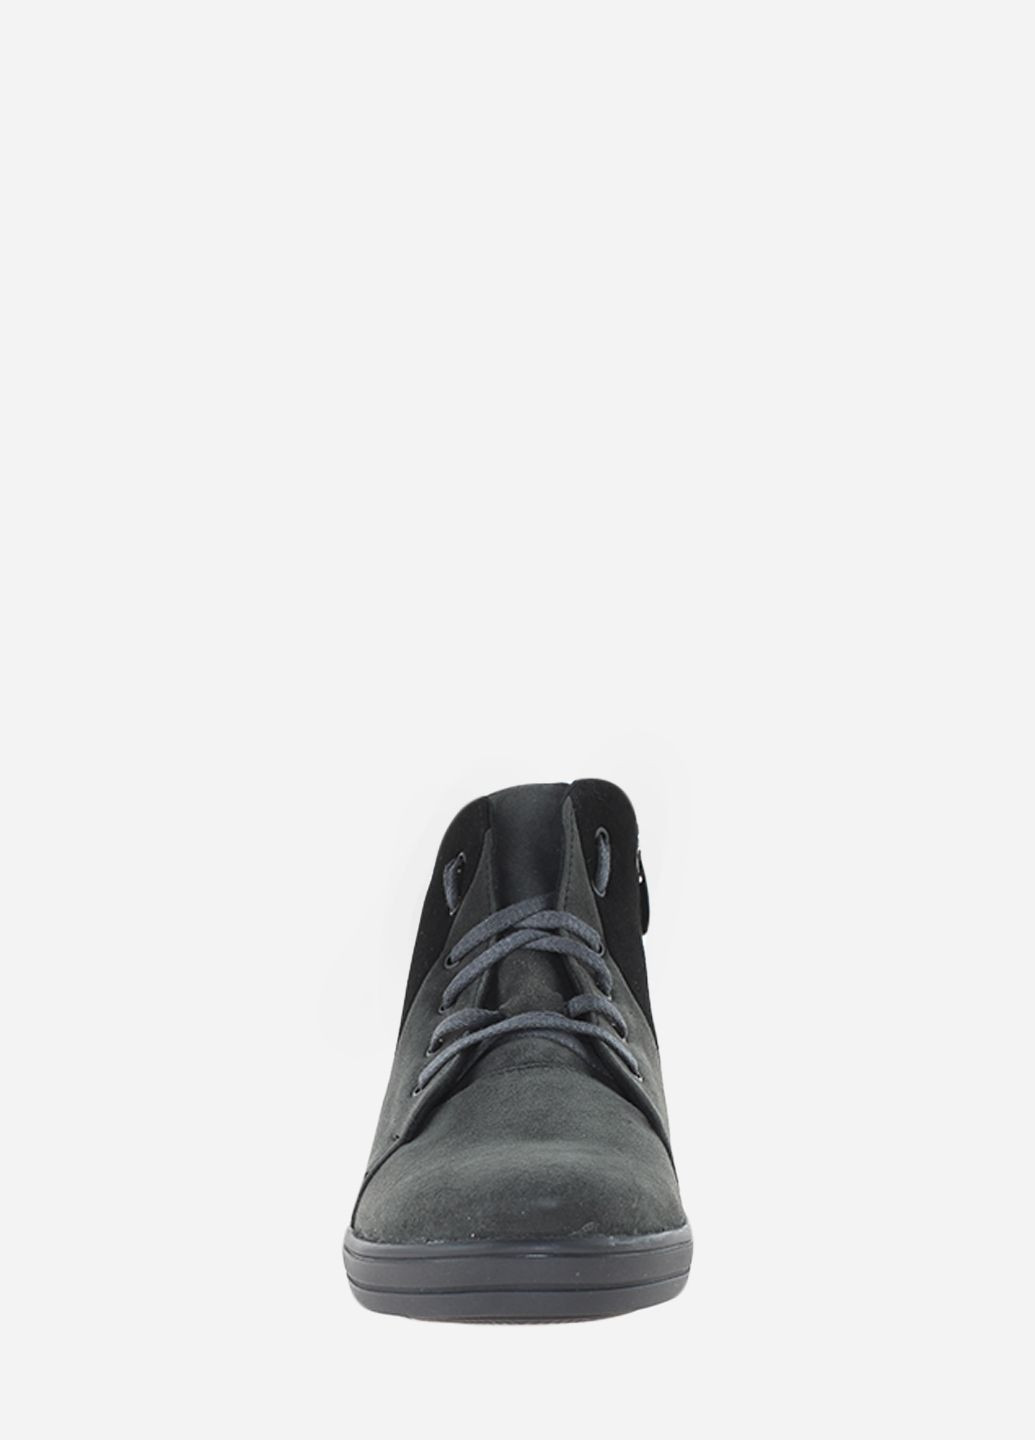 Осенние ботинки rv3-0-11 серый-черный Vira из натуральной замши